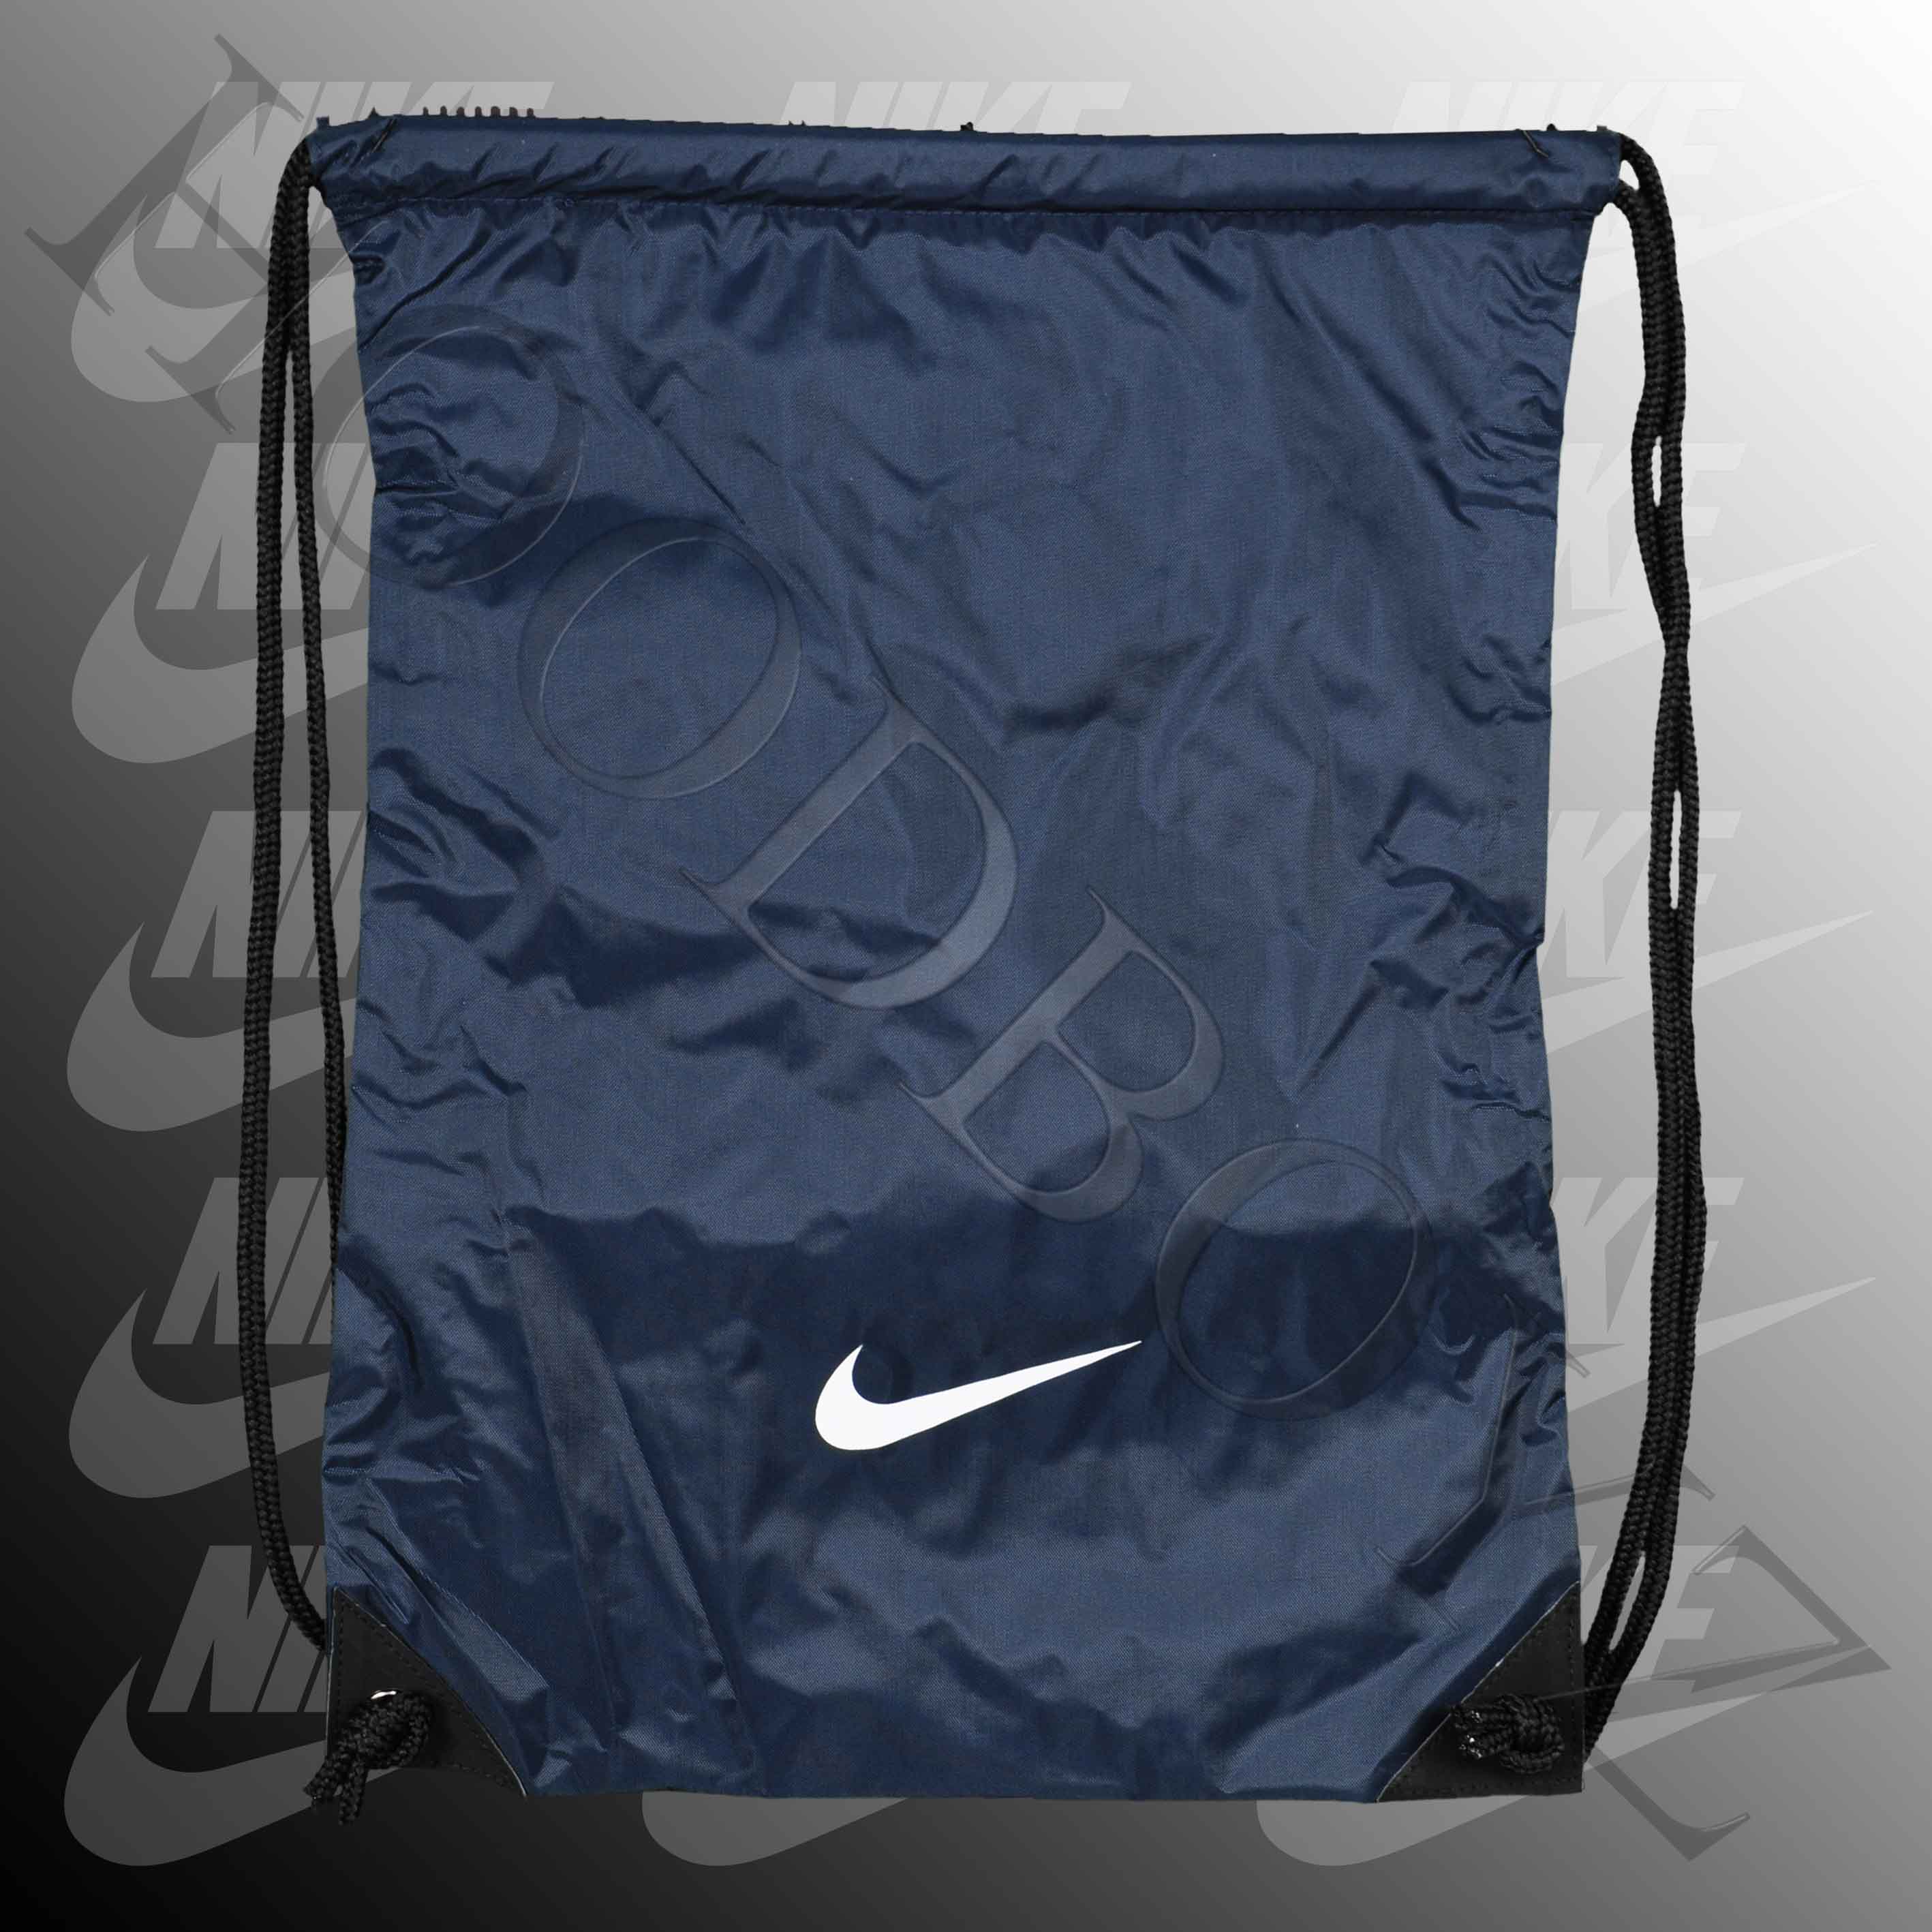 Foto Nike Equipment Gym Sack Bolsillos De Color Azul Oscuro